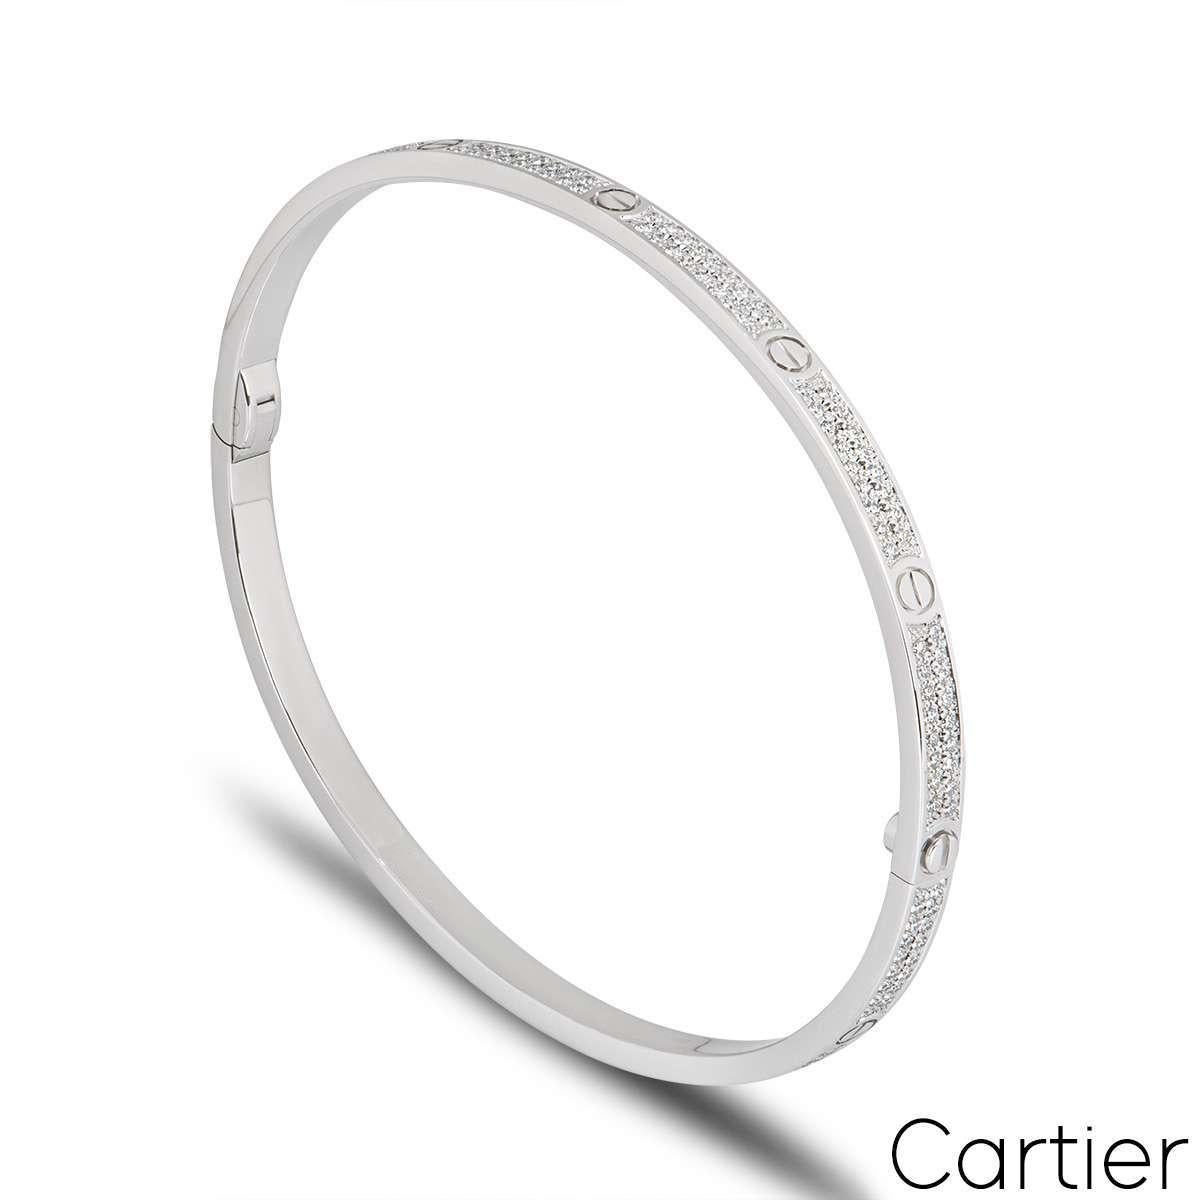 Un bracelet Cartier en or blanc 18 carats et diamants de la collection Love. Comprenant les motifs iconiques de la vis, ce bracelet est agrémenté de 177 diamants ronds de taille brillant sertis en pavé, d'un poids total de 0,95ct. Le bracelet est de